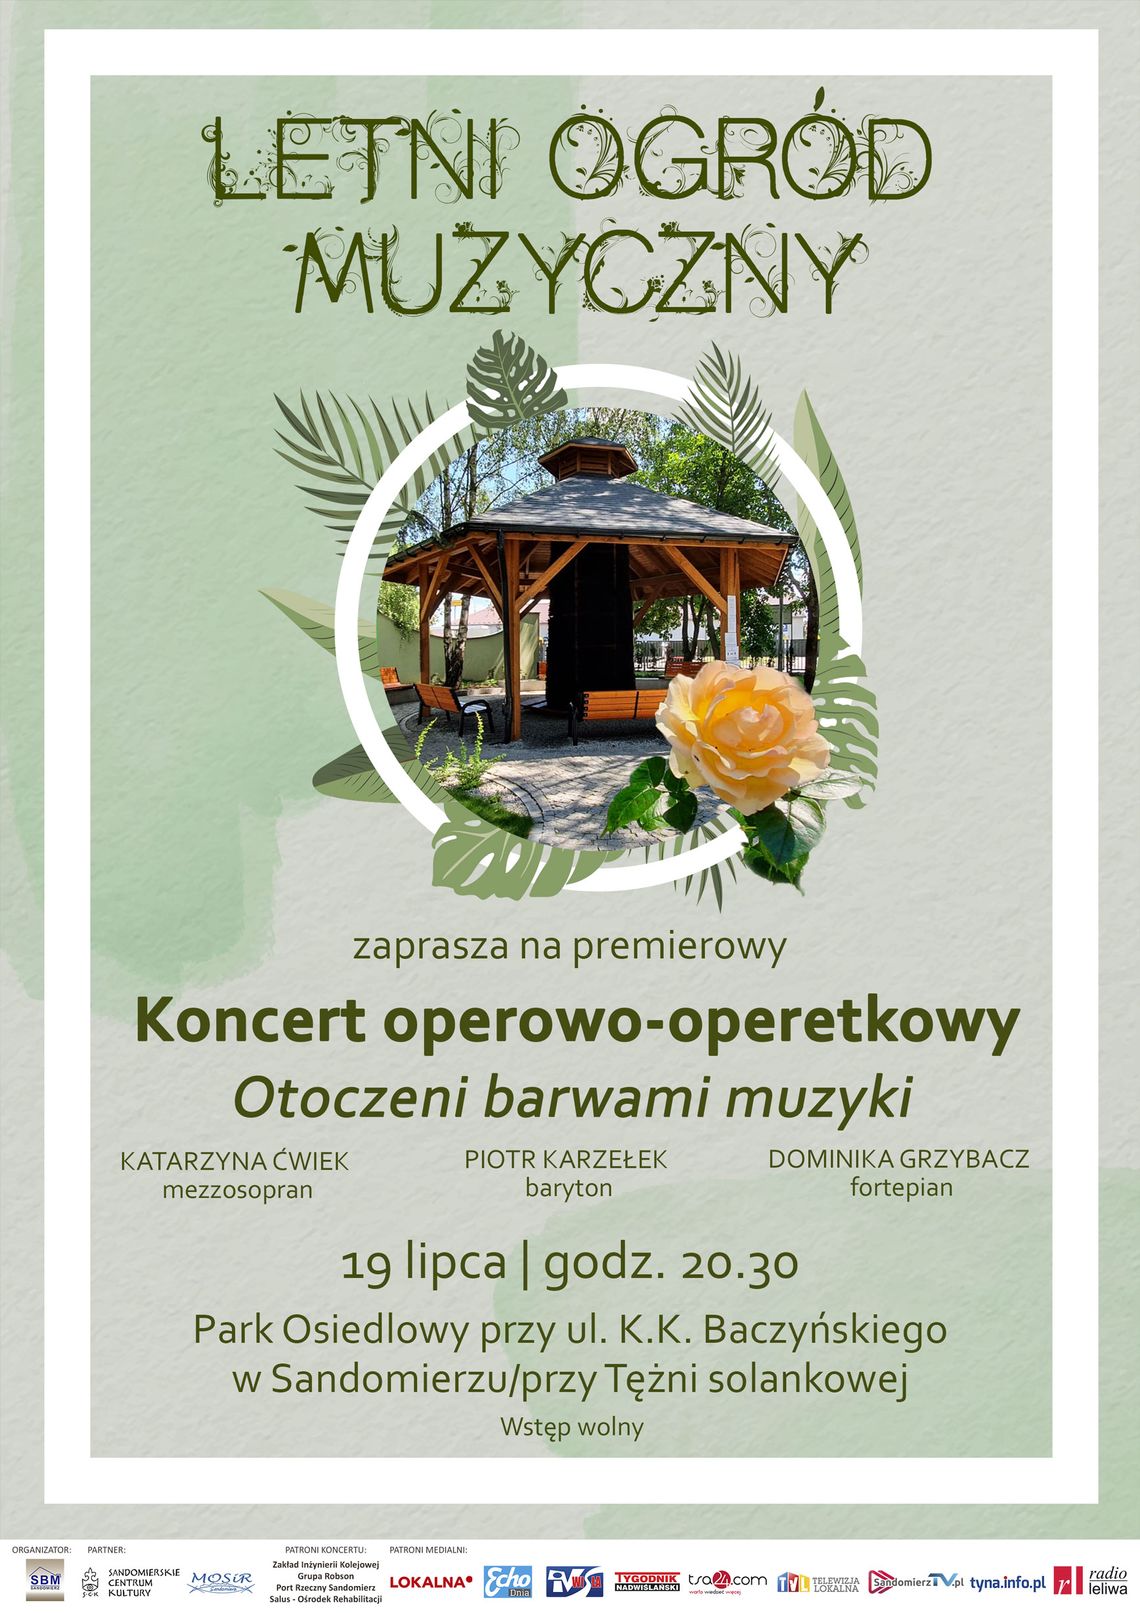 Letni ogród muzyczny - koncert „Otoczeni barwami muzyki”